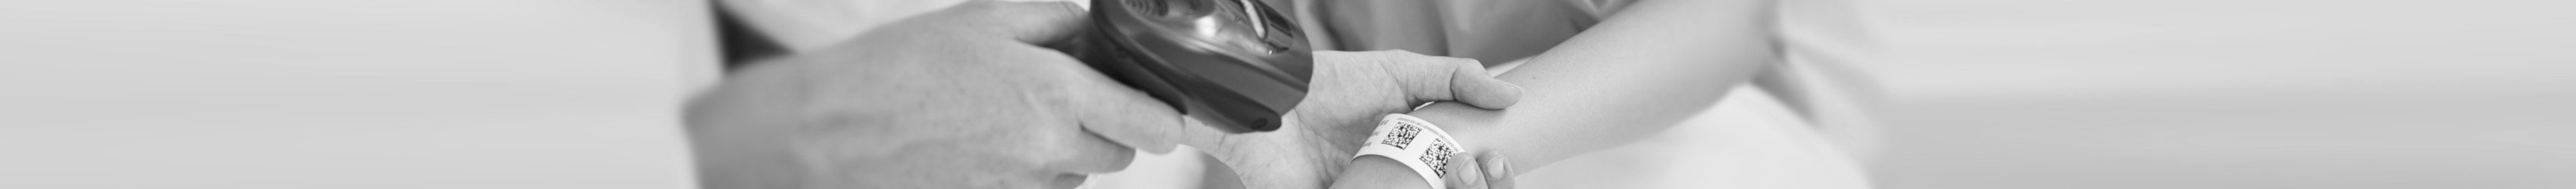 Ein Patientenarmband mit einem GS1 DataMatrix wird im Krankenhaus gescannt